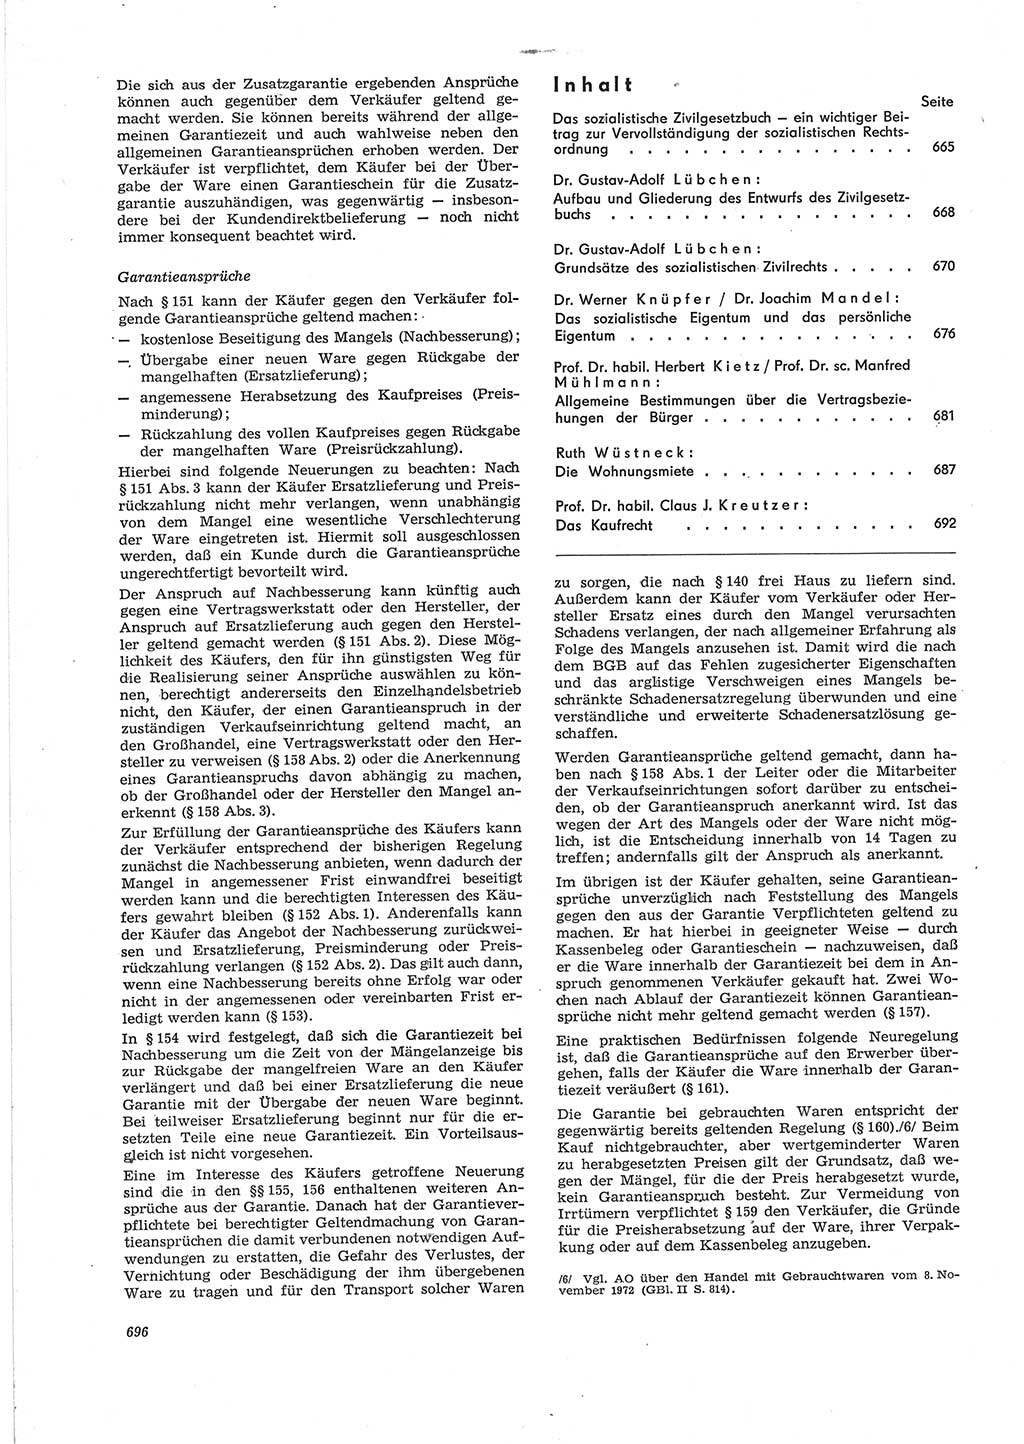 Neue Justiz (NJ), Zeitschrift für Recht und Rechtswissenschaft [Deutsche Demokratische Republik (DDR)], 28. Jahrgang 1974, Seite 696 (NJ DDR 1974, S. 696)